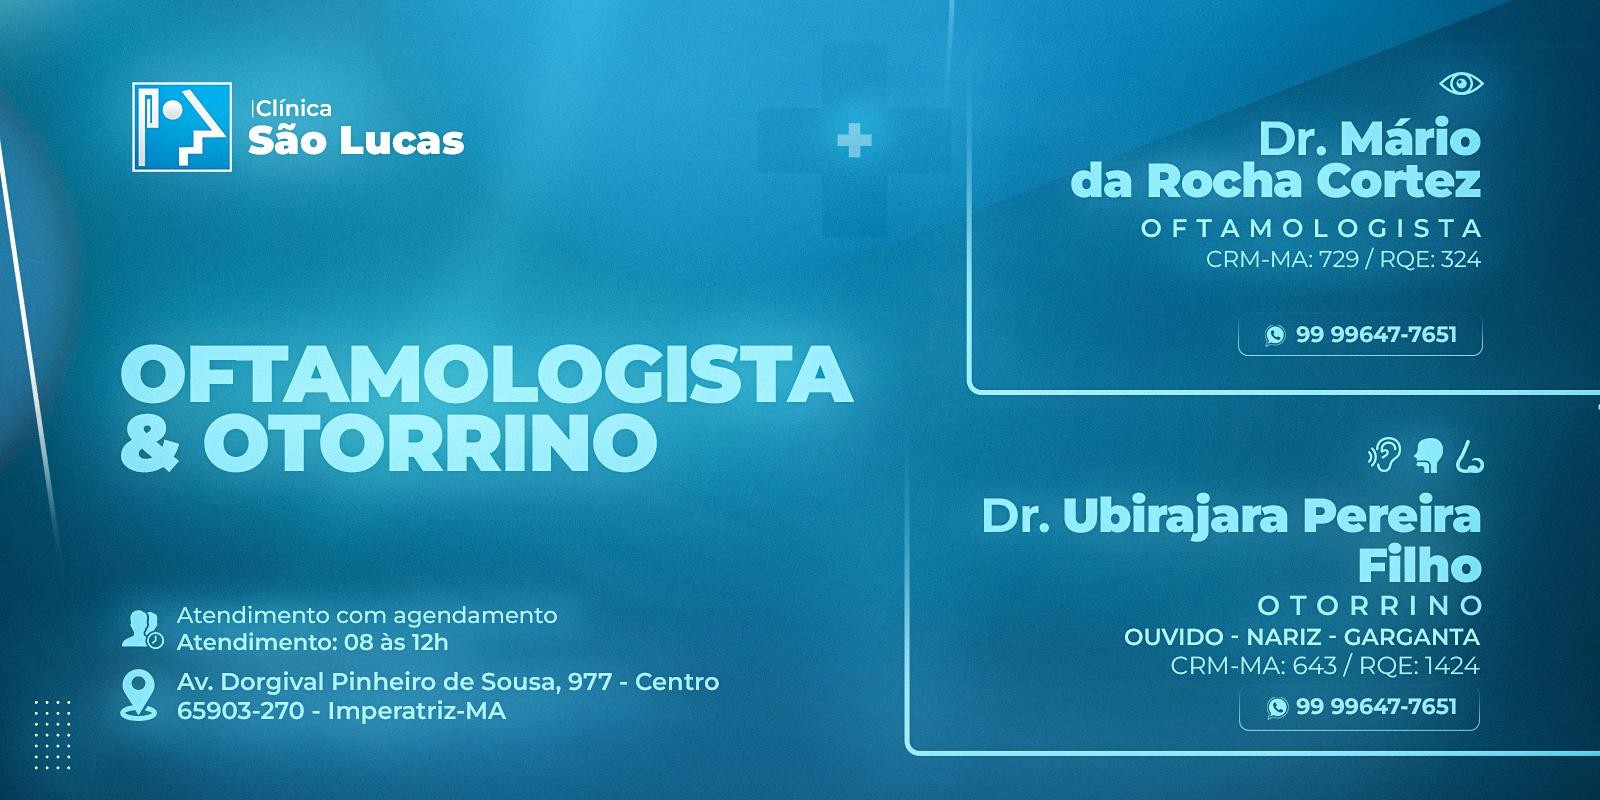 Clínica São Lucas - Oftalmologia e Otorrinolaringologia